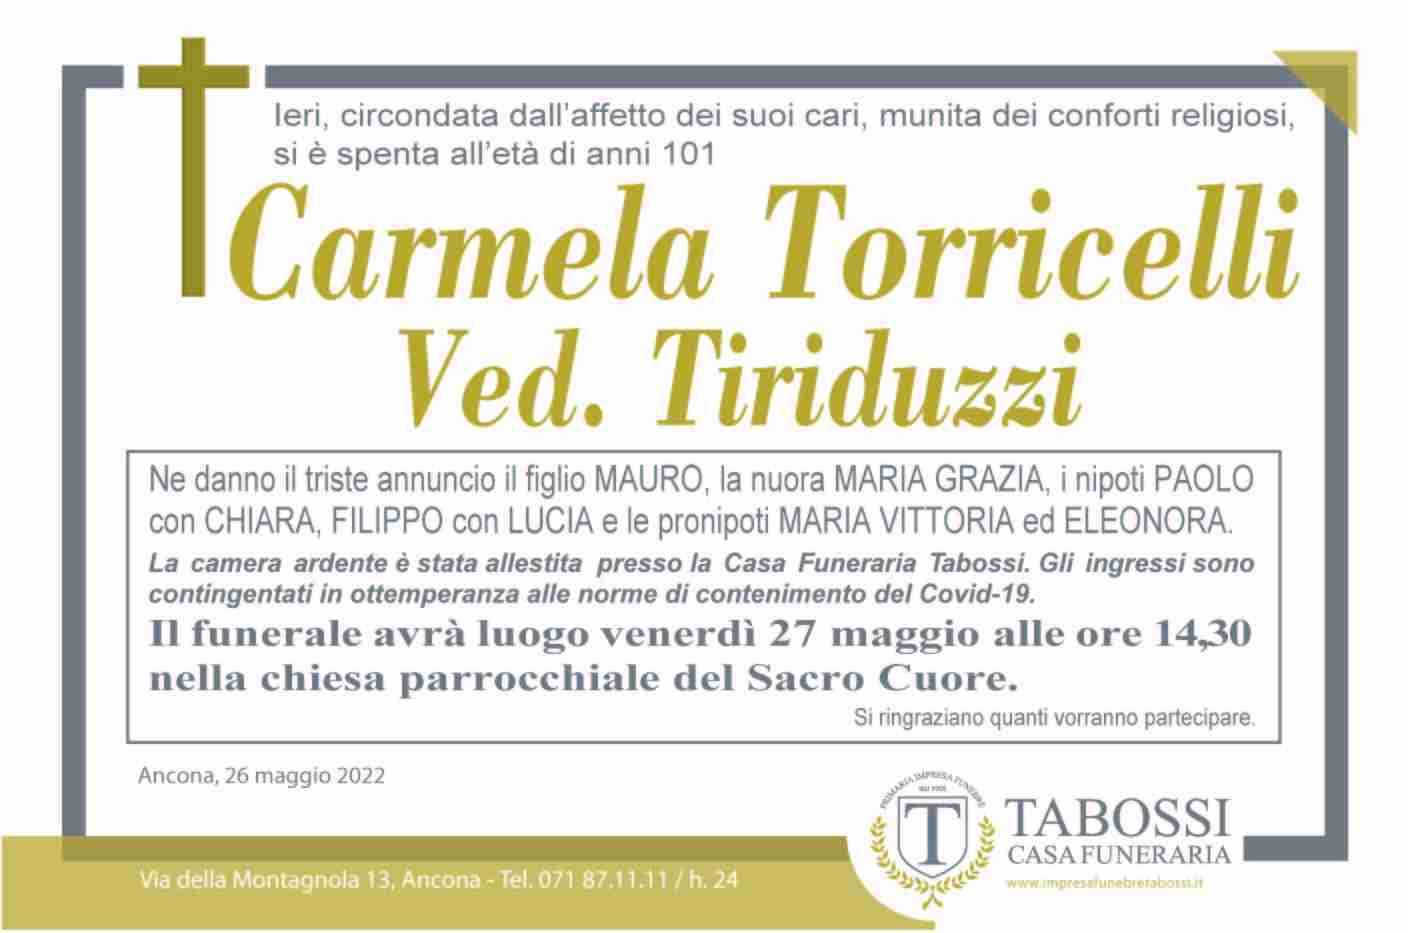 Carmela Torricelli